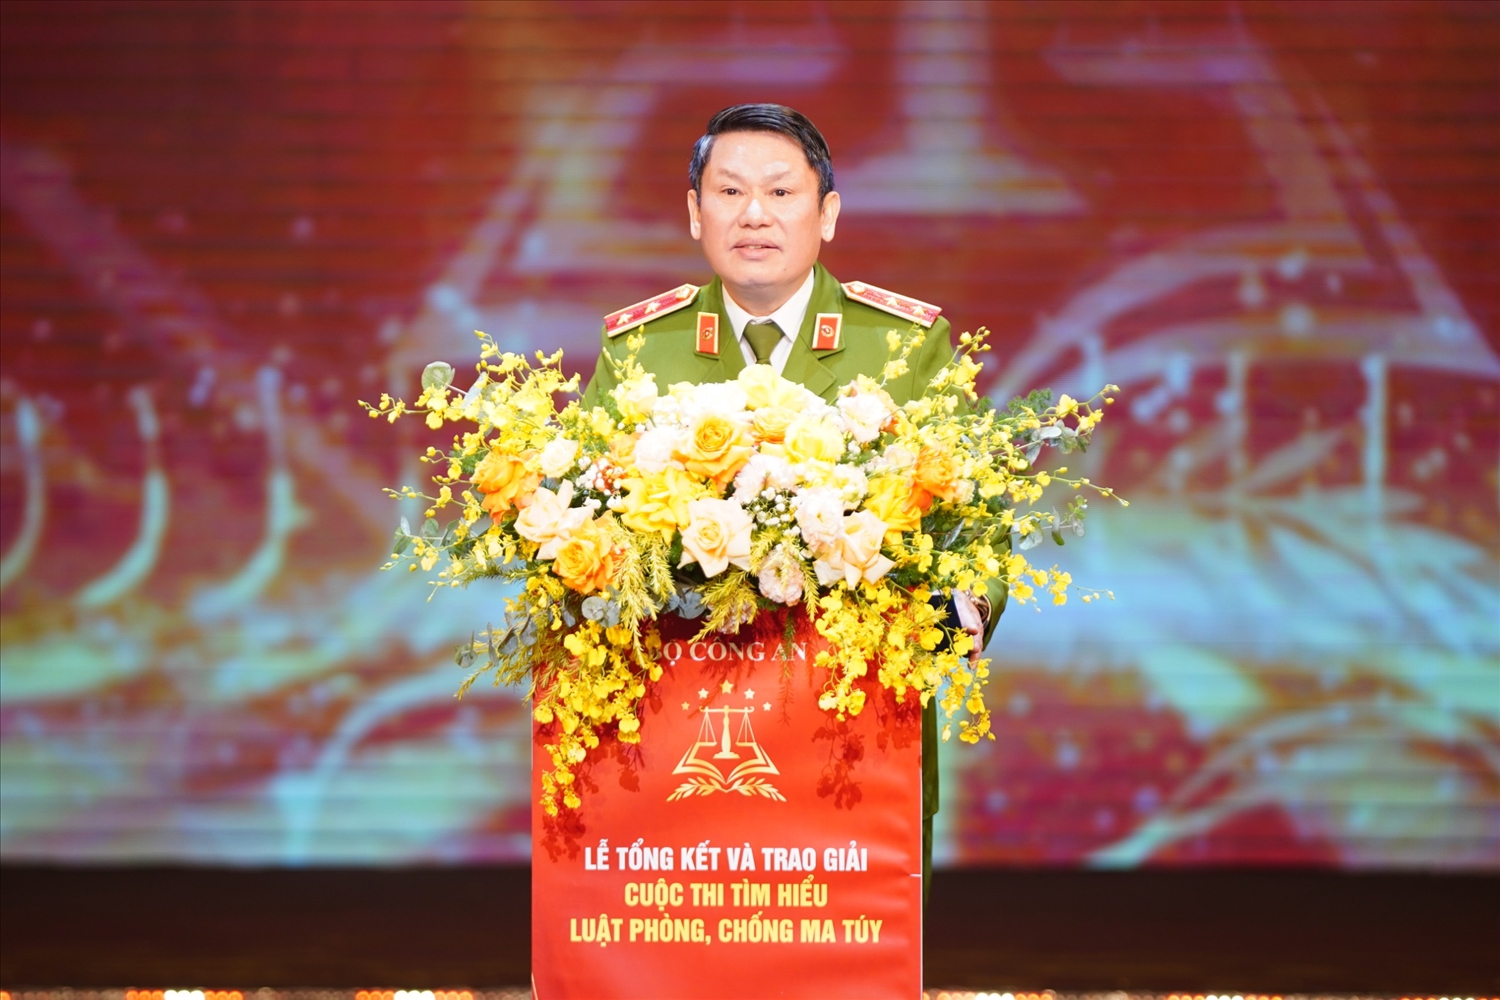 Trung tướng Nguyễn Văn Viện, Cục trưởng Cảnh sát điều tra tội phạm về ma túy (Bộ Công an) báo cáo tổng kết cuộc thi.